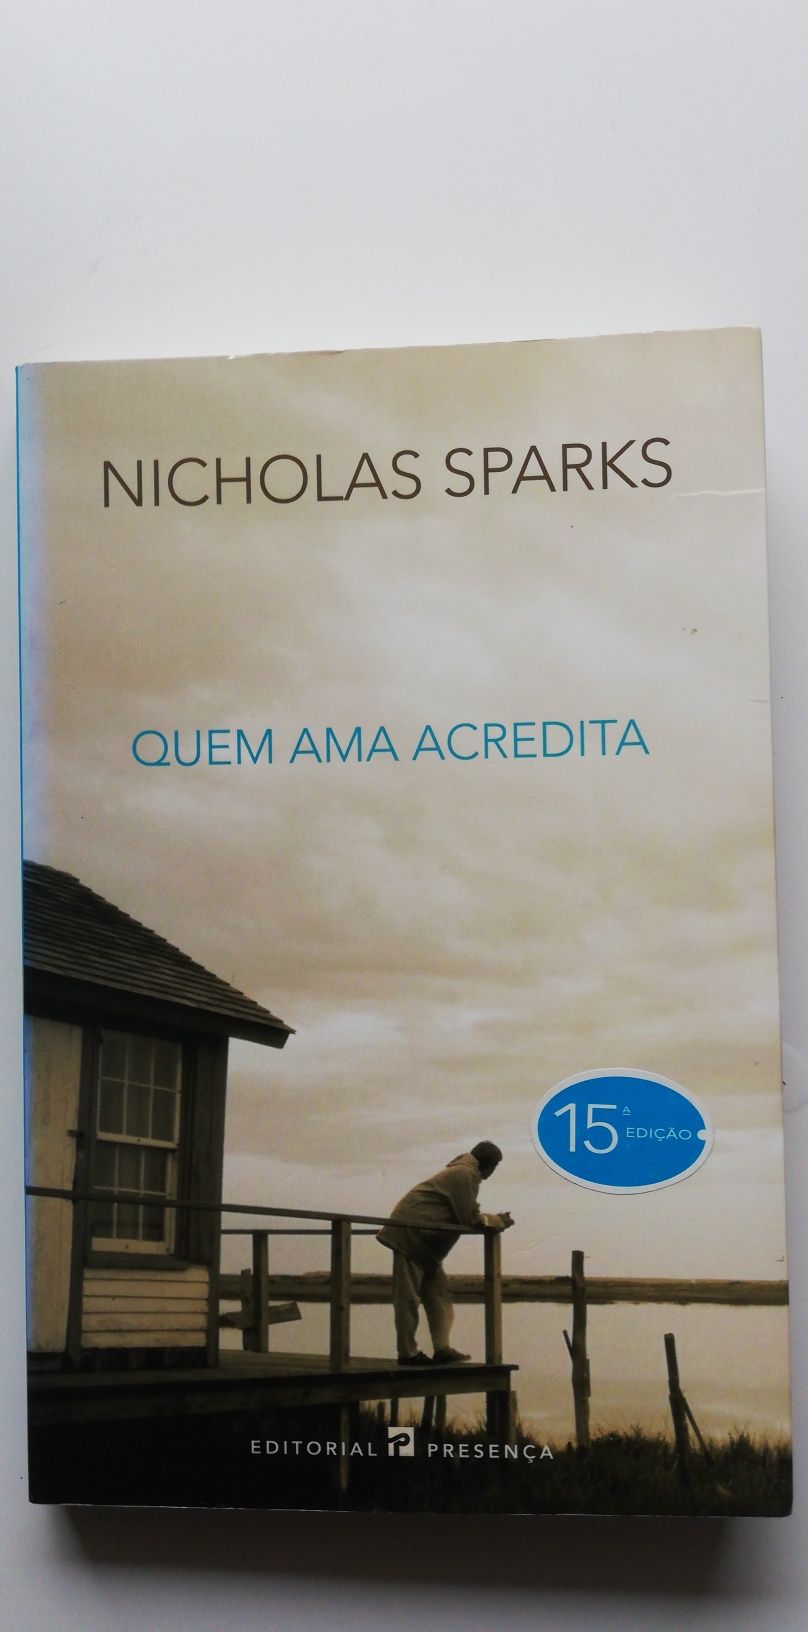 Quem ama acredita, de Nicholas Sparks